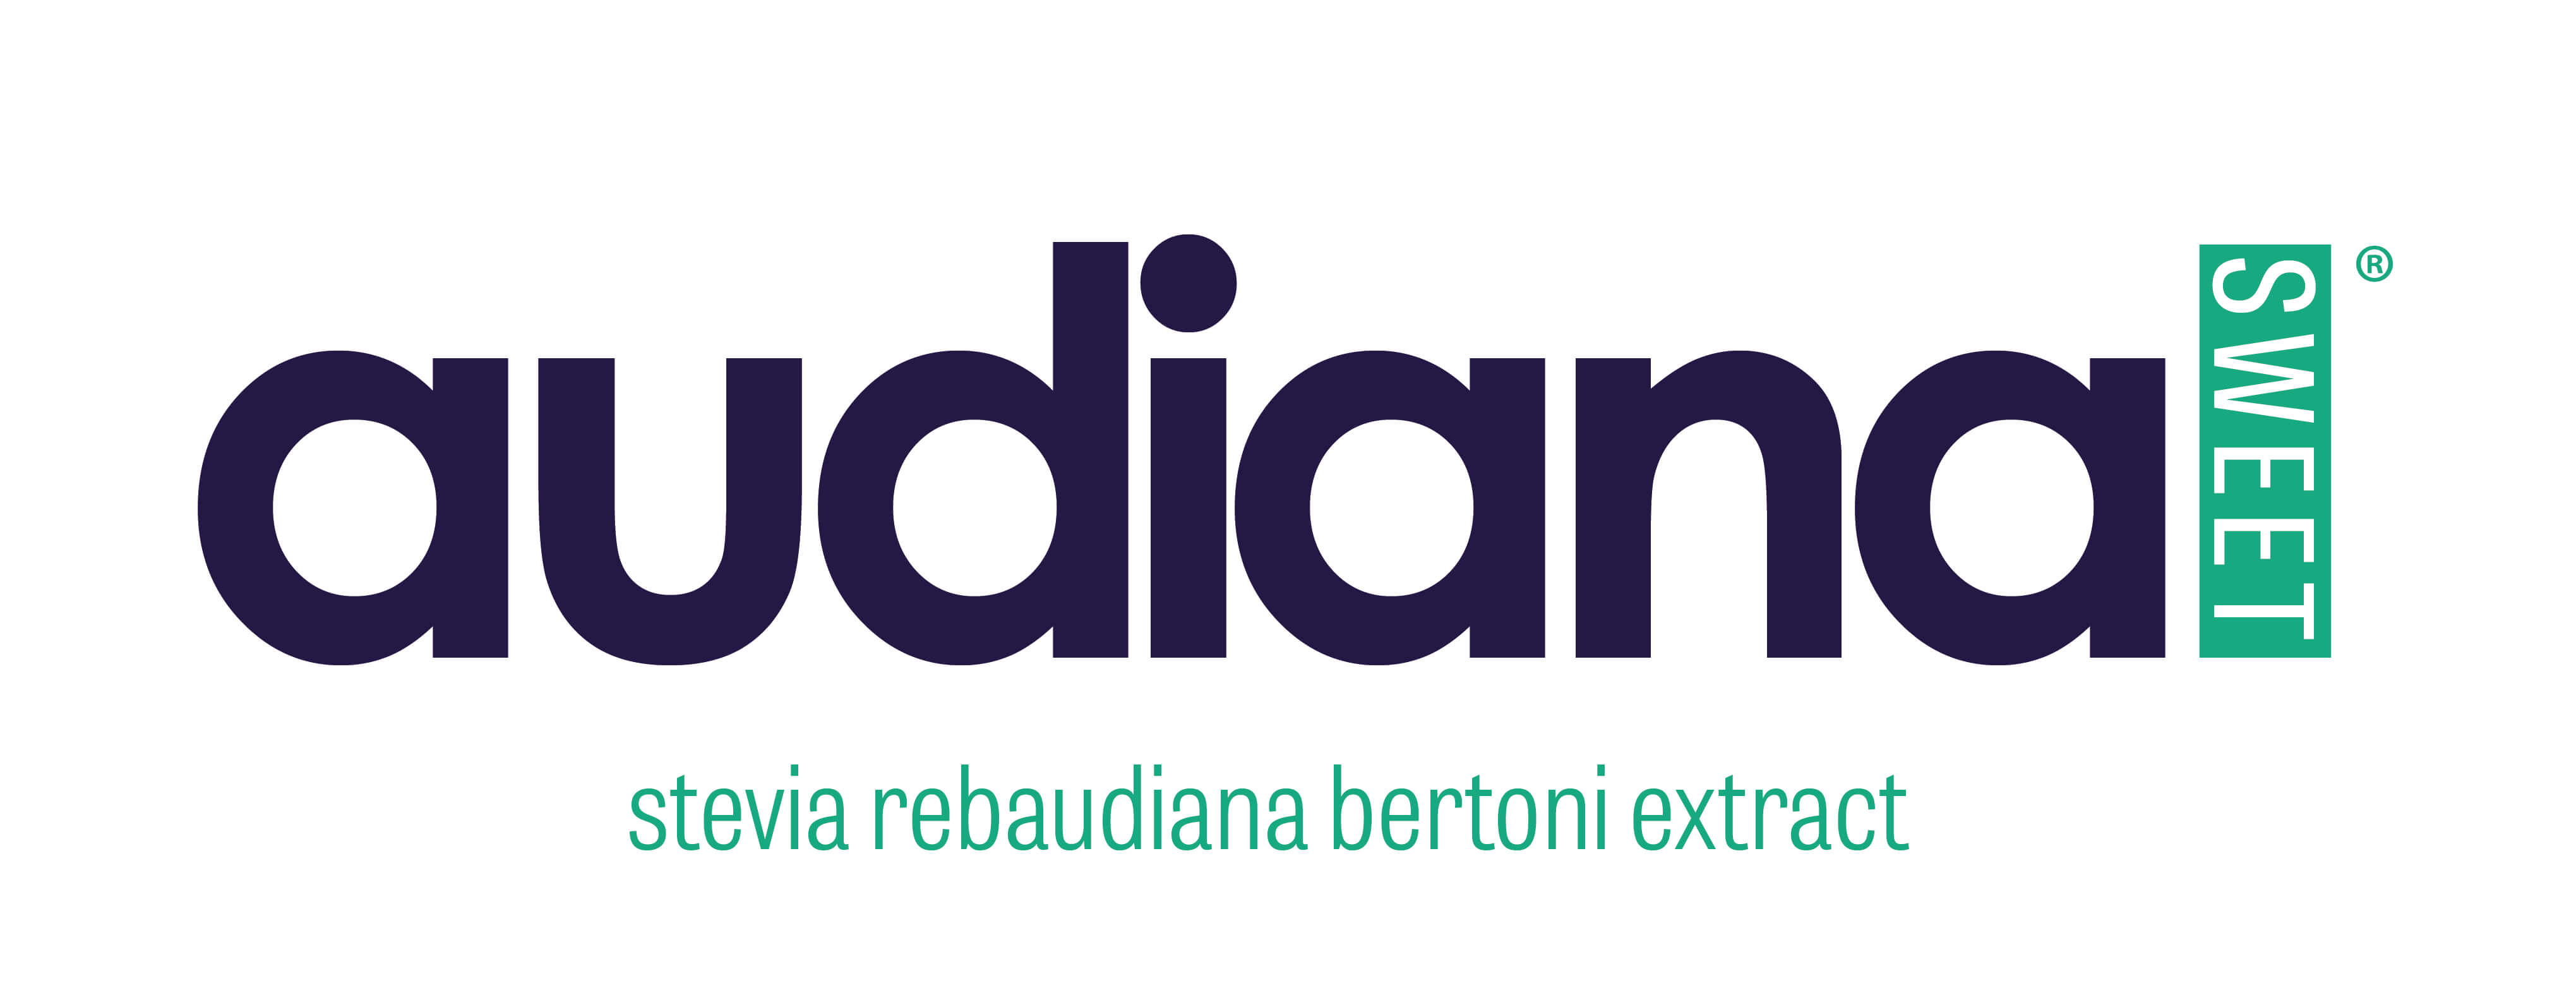 AudianaSWEET Logo